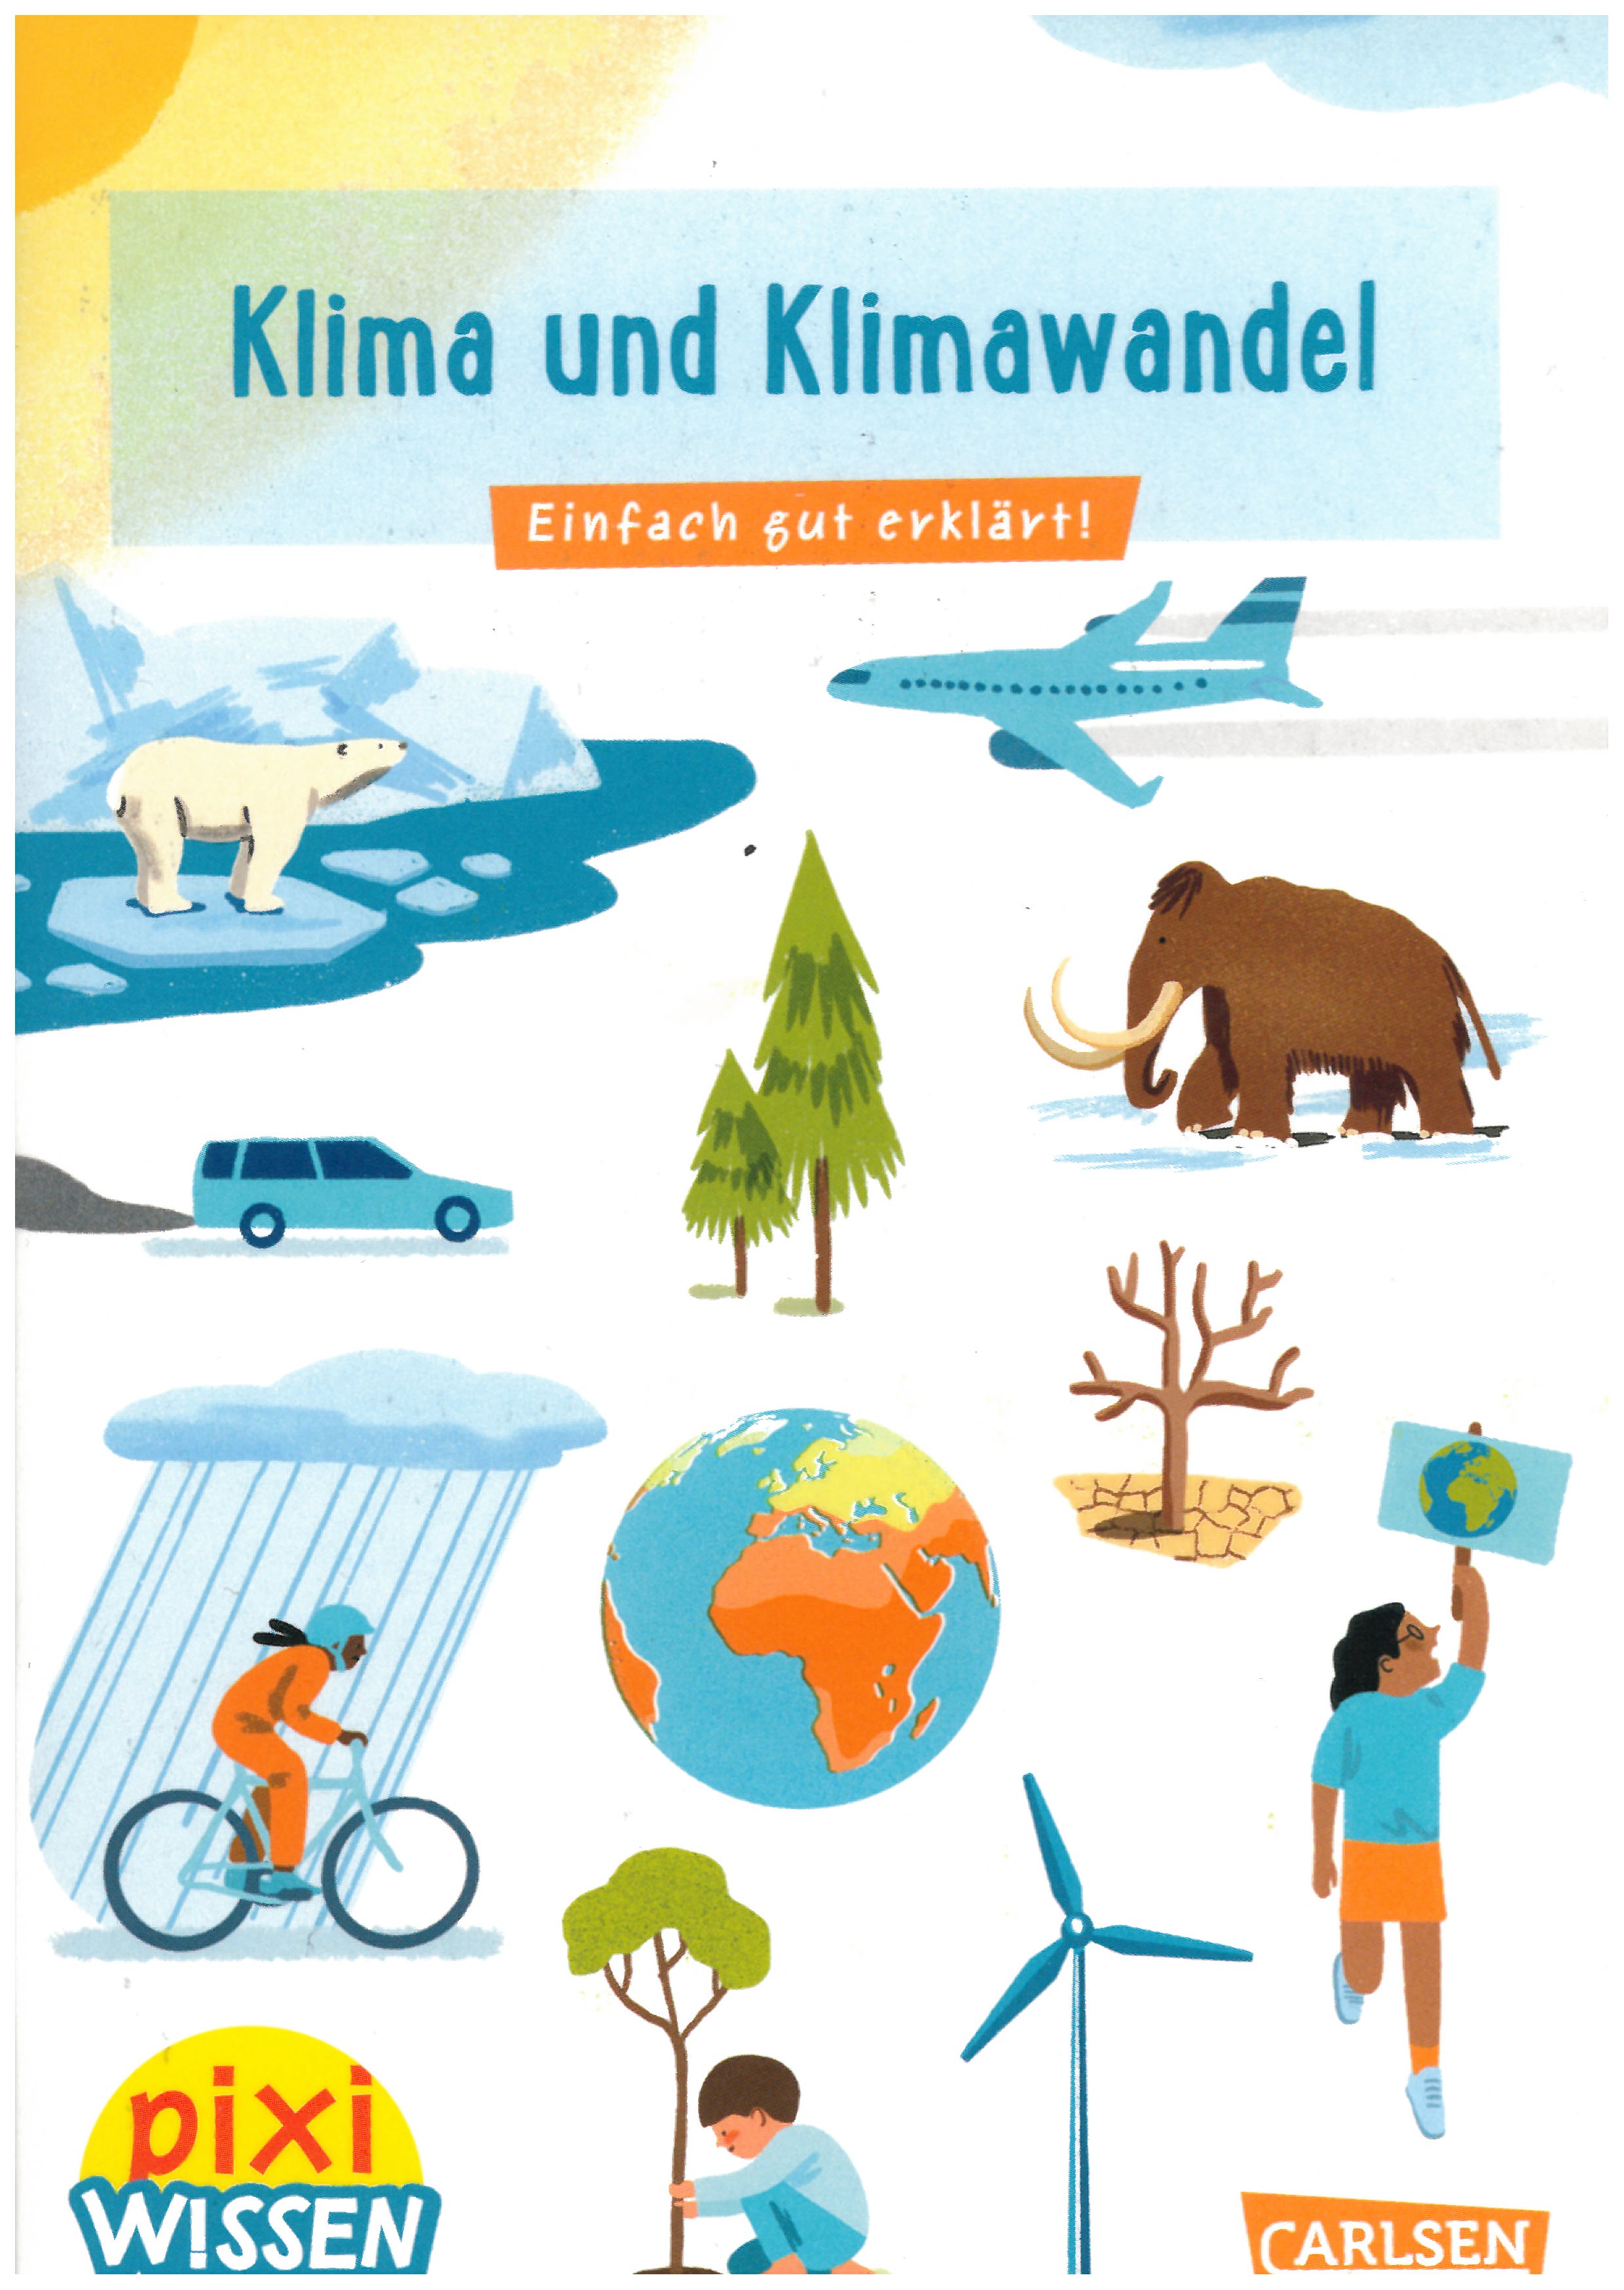 Kinderbuch pixi wissen "Klima+Klimawandel"